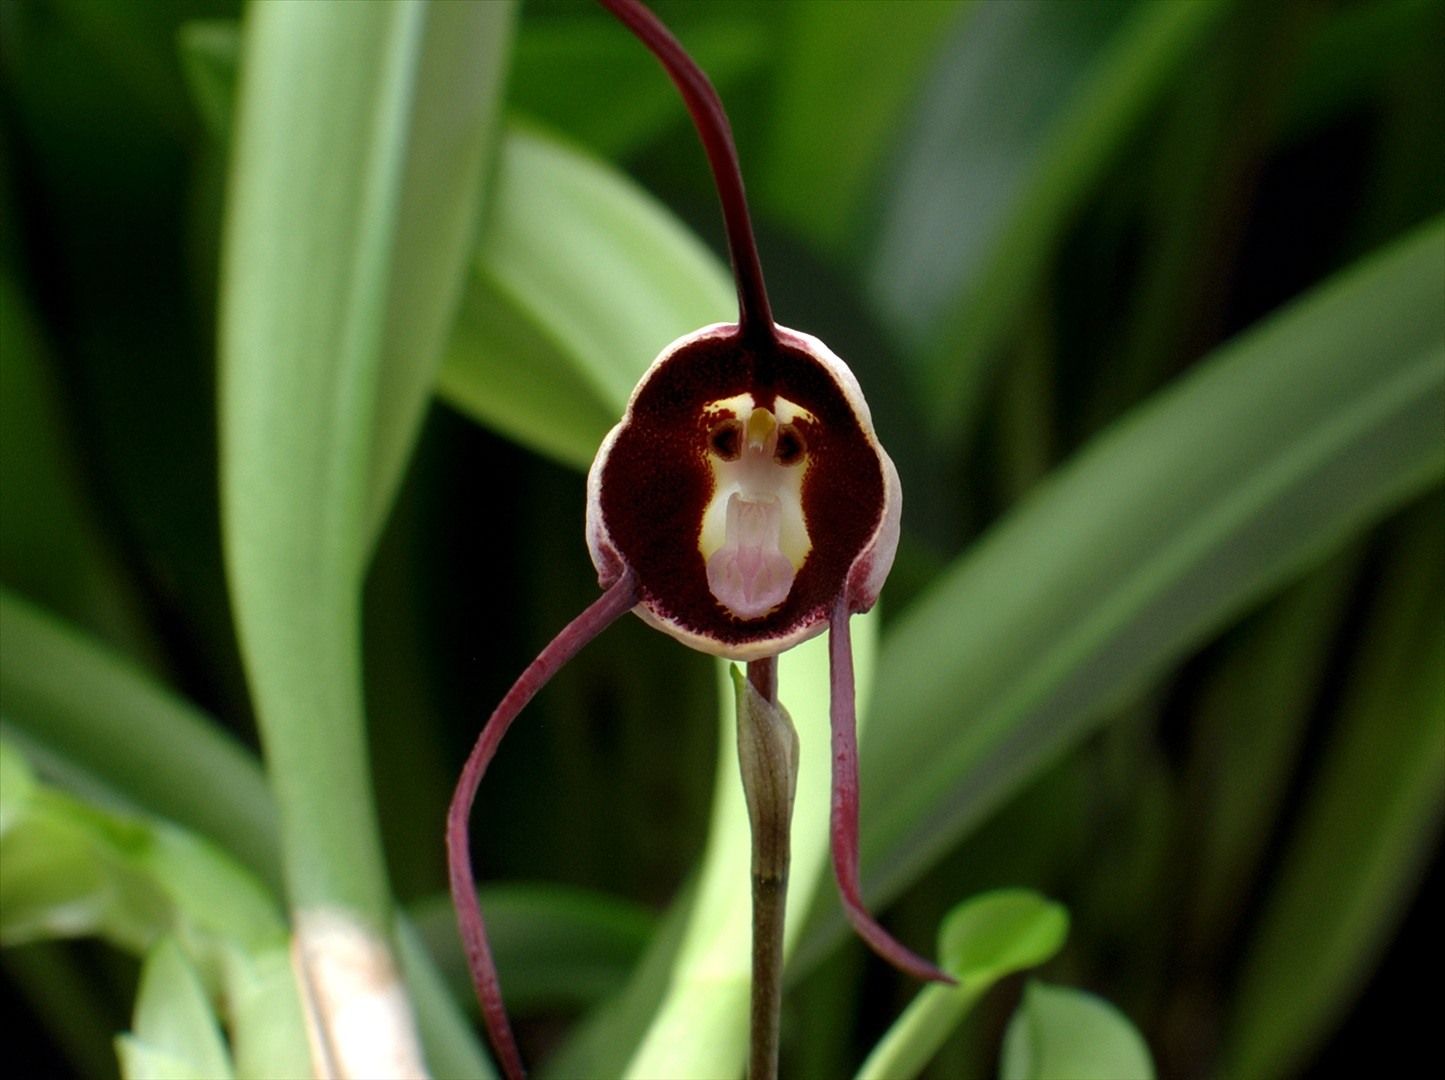 Орхидея-обезьяна, Обезьяний Дракула